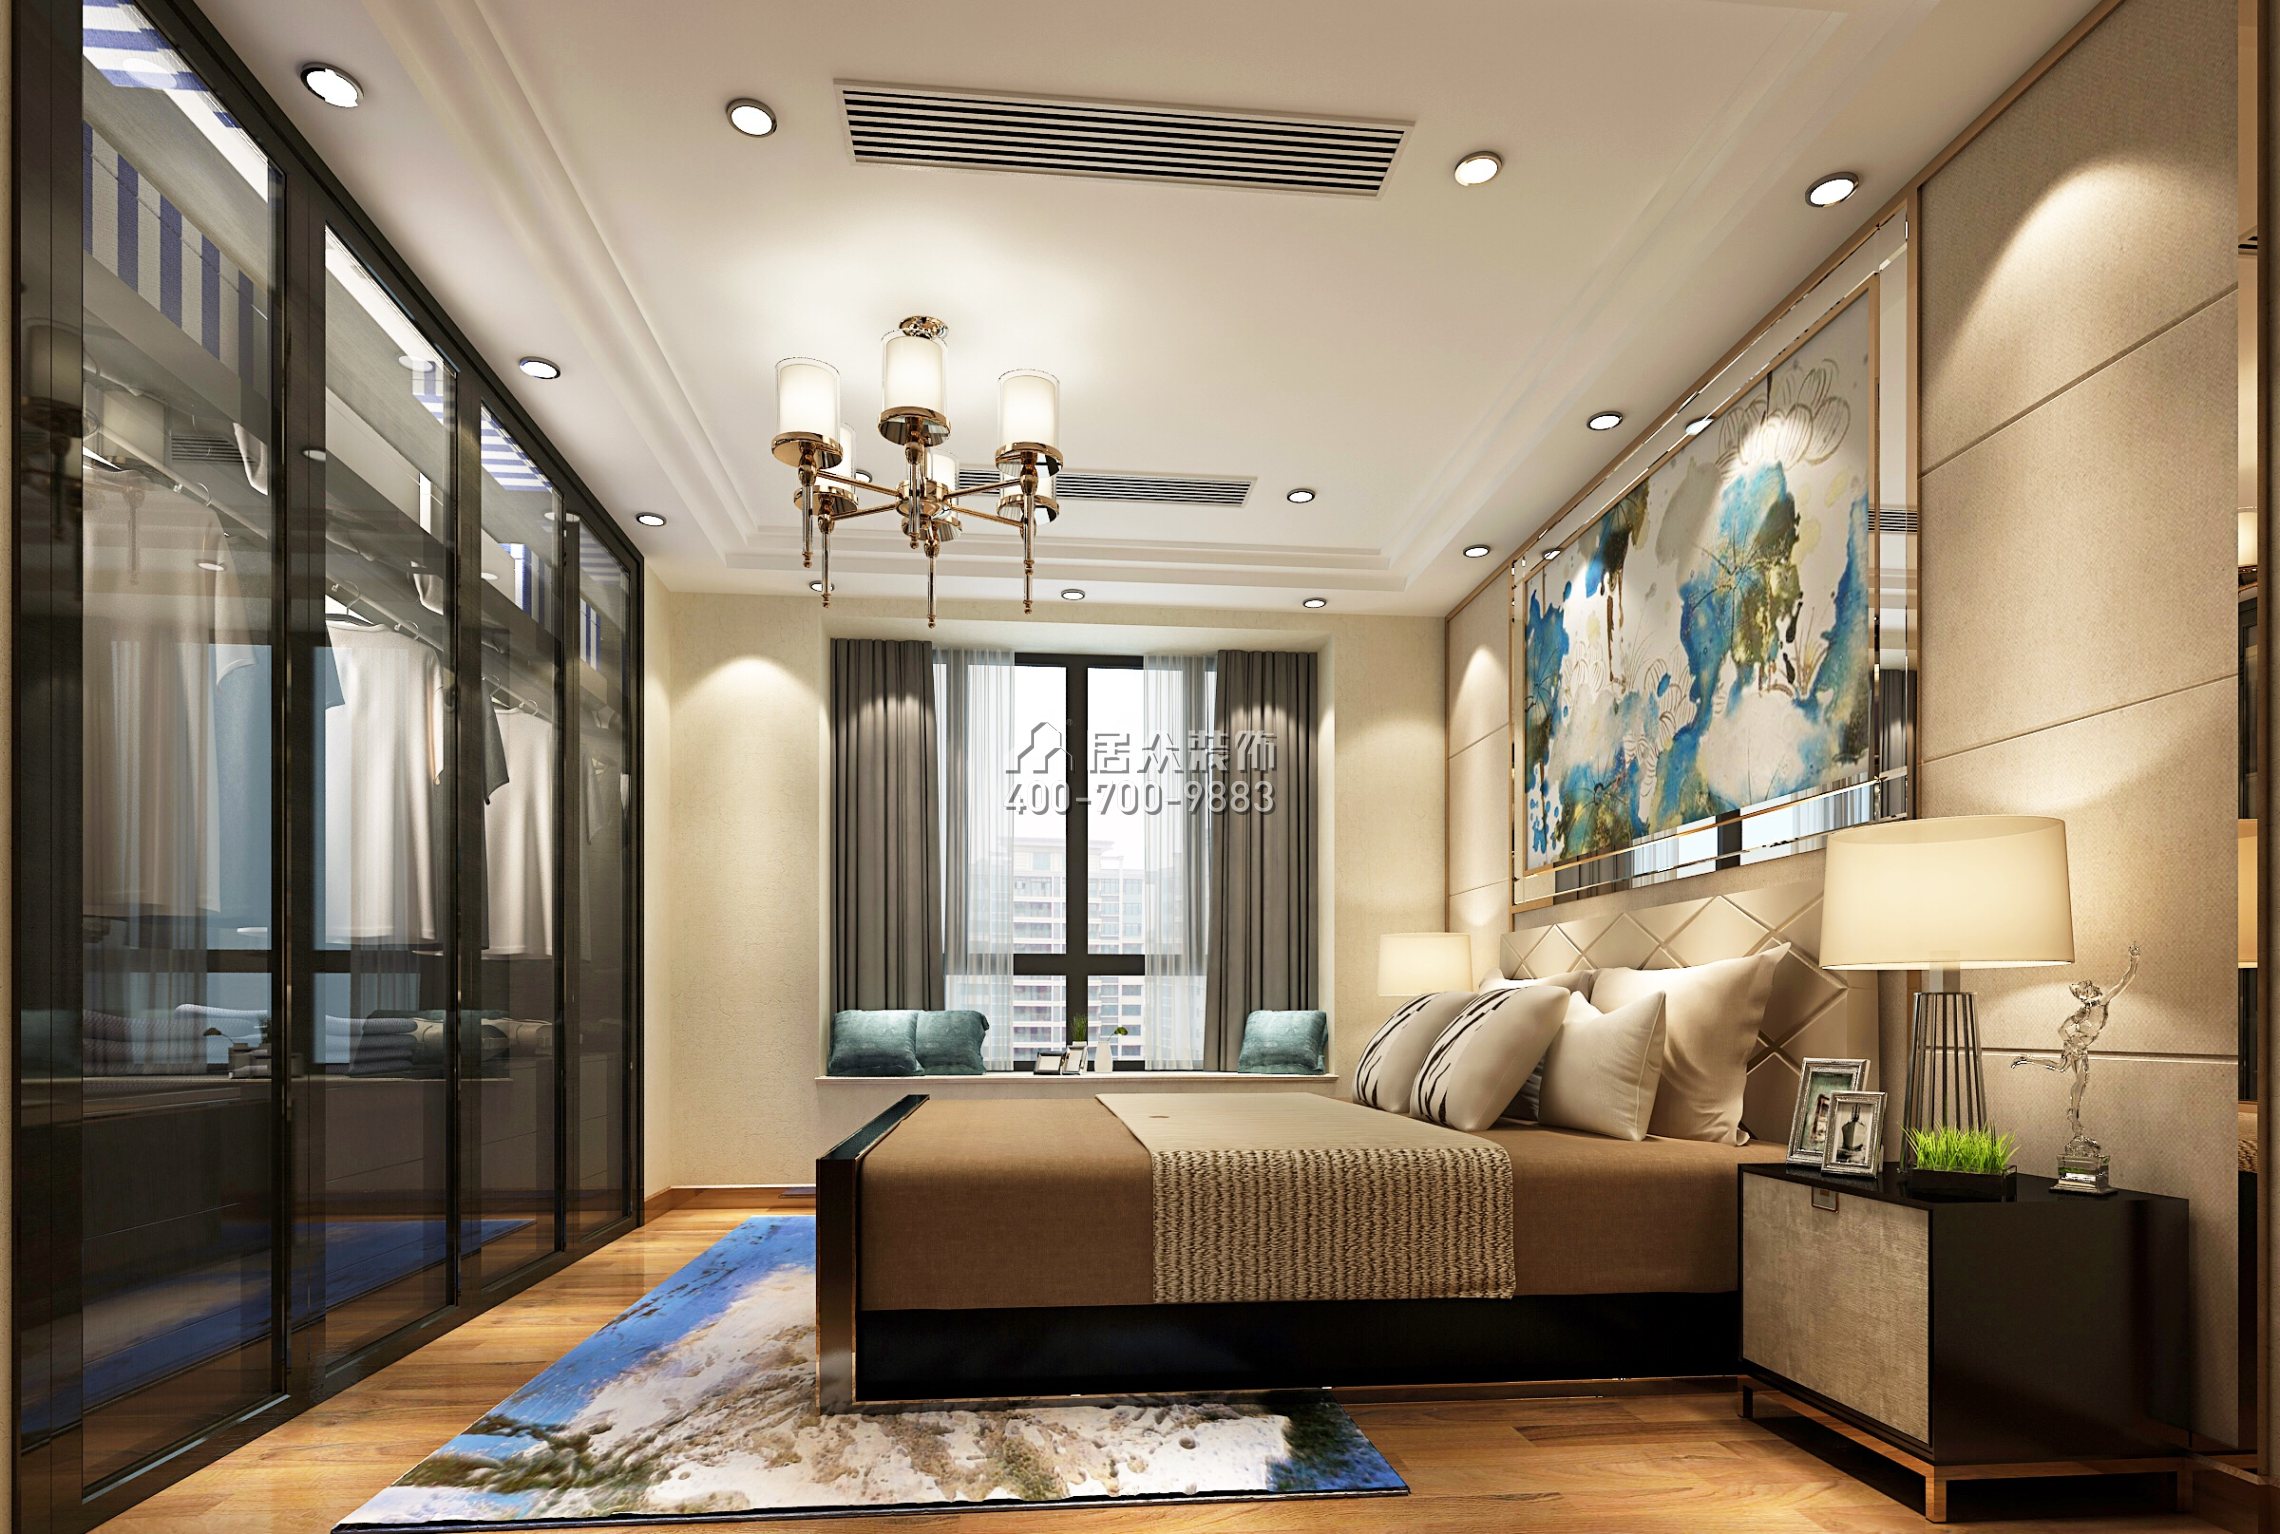 大信君汇湾240平方米新古典风格平层户型卧室装修效果图